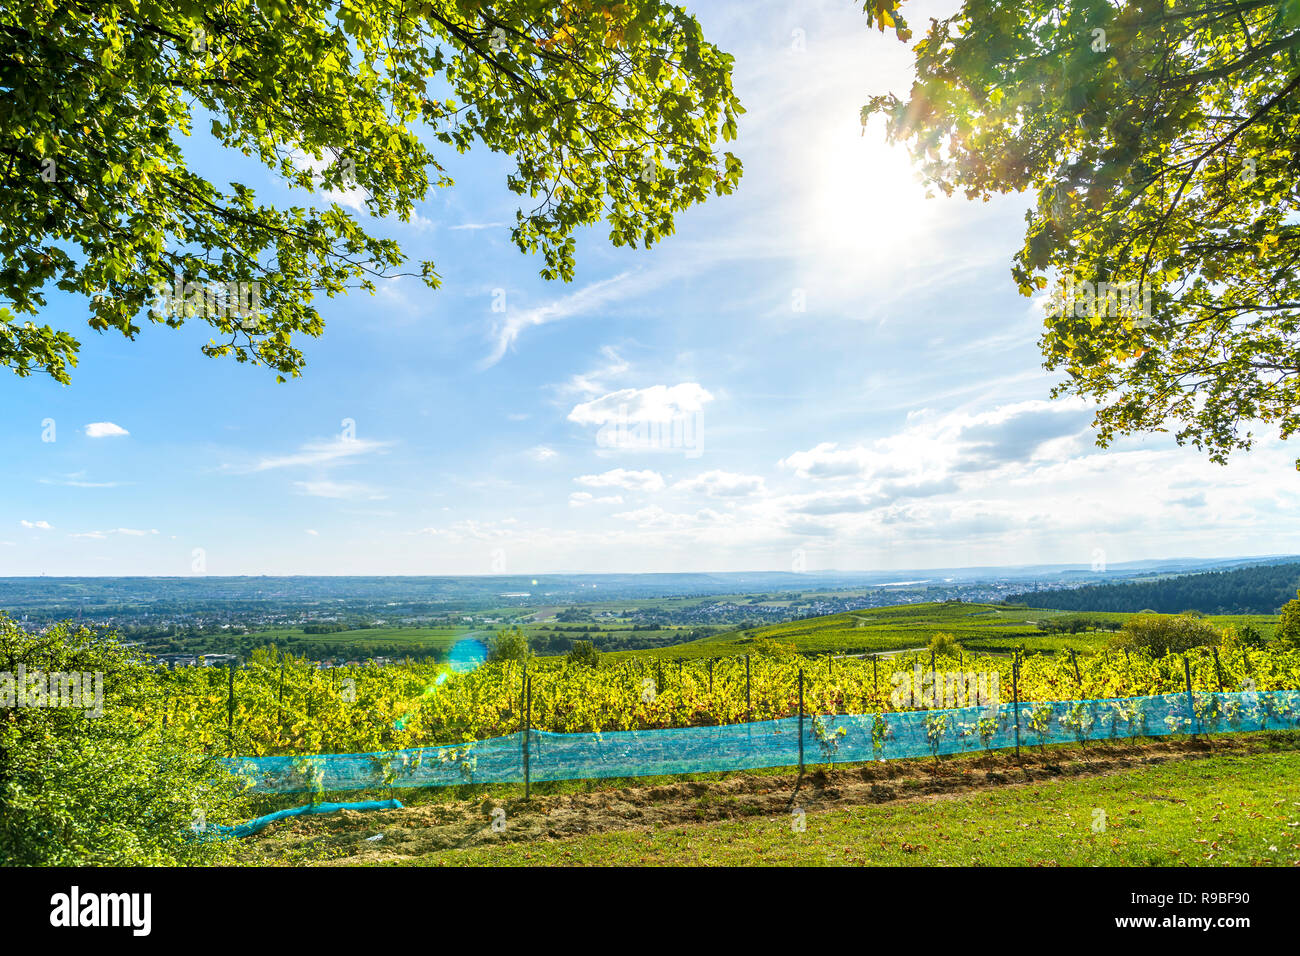 Vineyards, Kiedrich, Rheingau, Germany Stock Photo